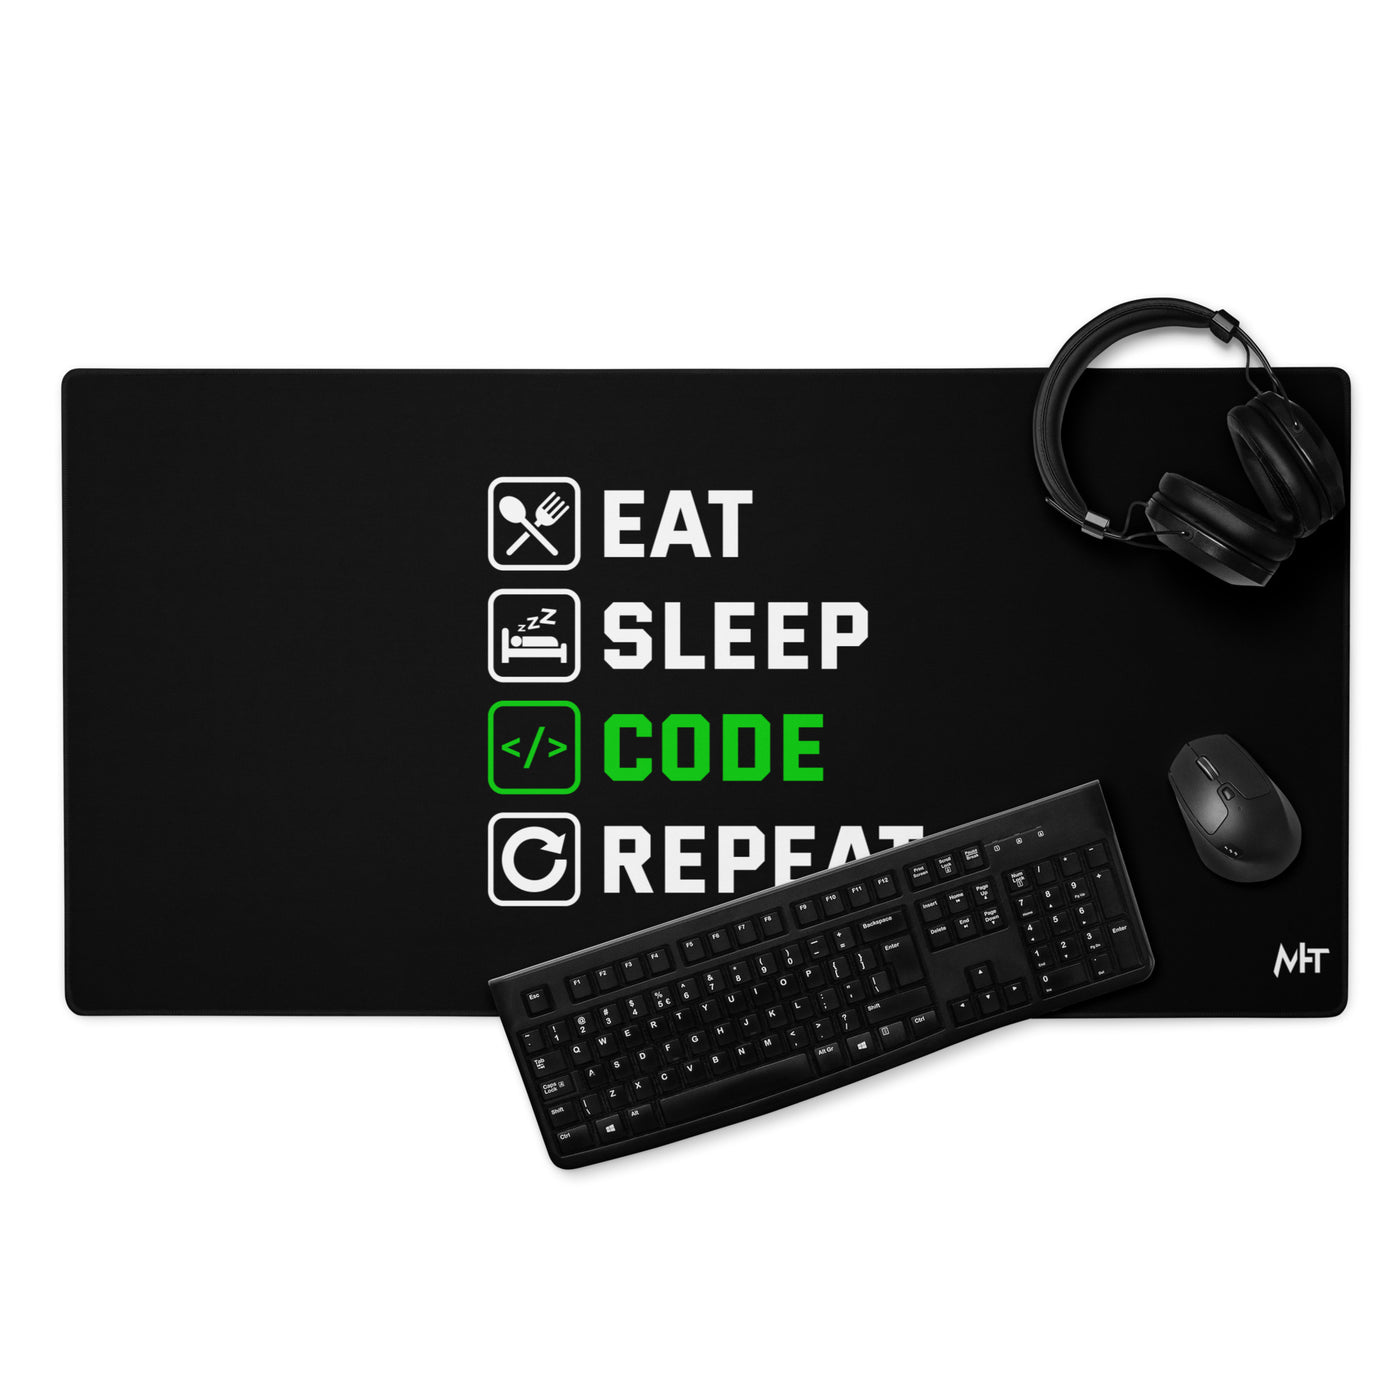 Eat Sleep Code Repeat (Mahfuz) Desk Mat